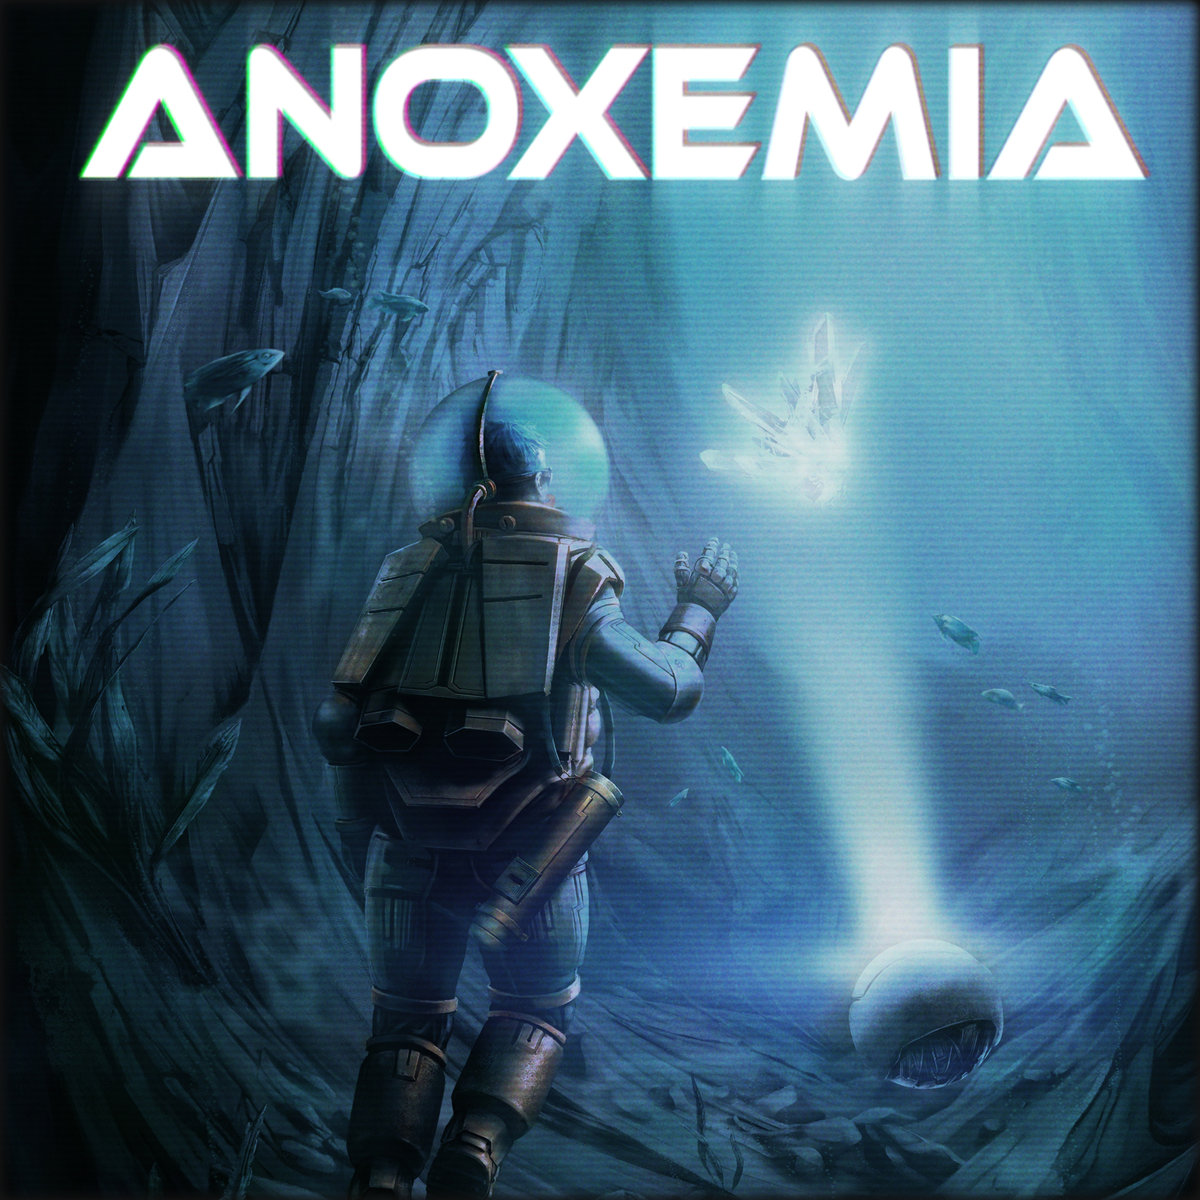 Anoxemia digitaal verkrijgbaar vanaf 28 maart!